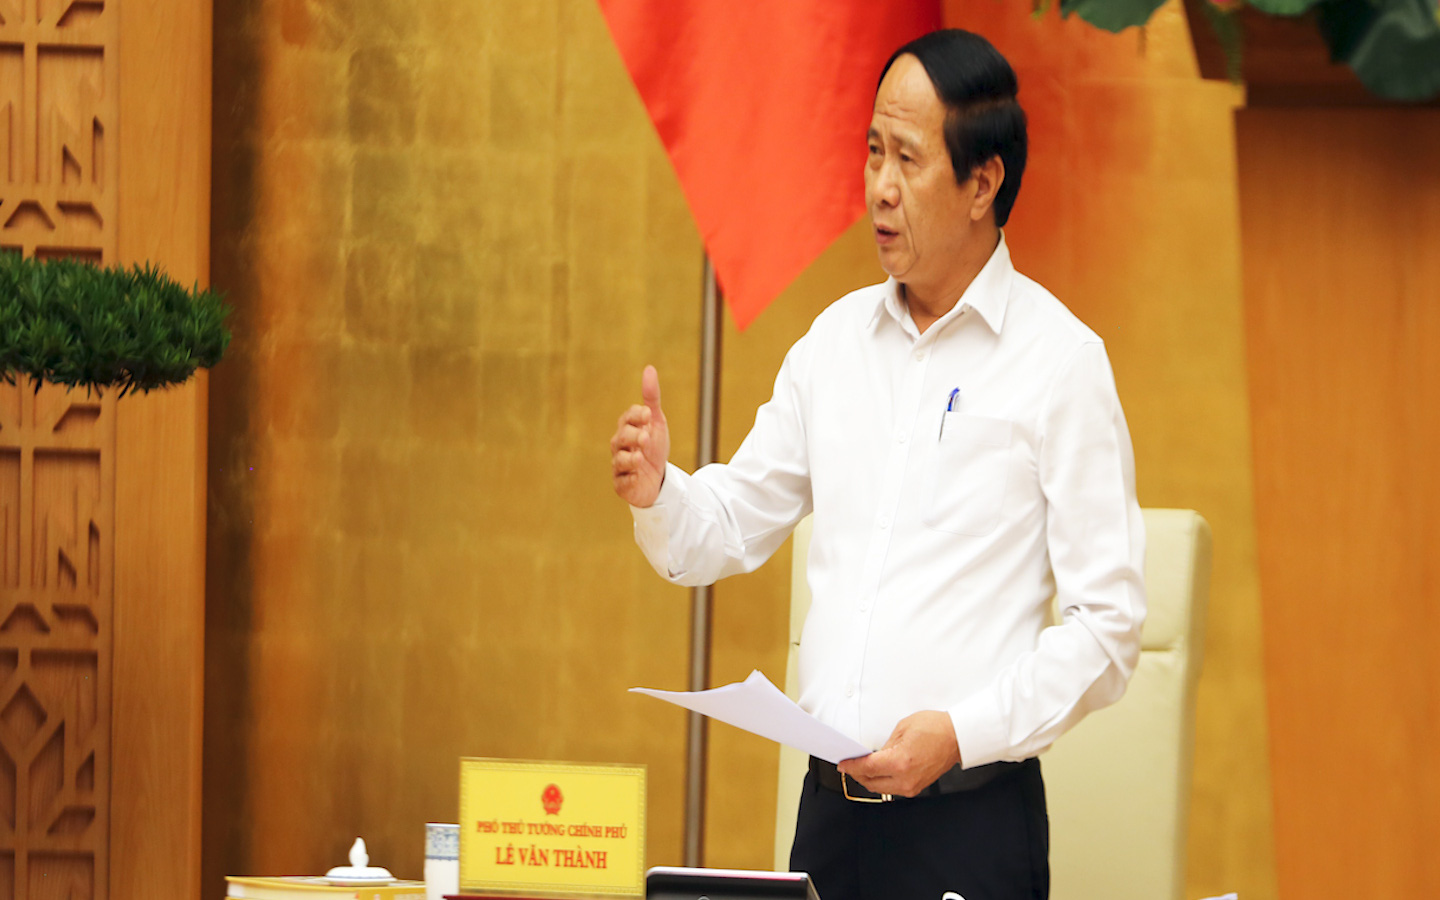 Phó Thủ tướng Lê Văn Thành: Phải quyết tâm, nỗ lực giảm thiểu thiệt hại do thiên tai gây ra ở mức thấp nhất